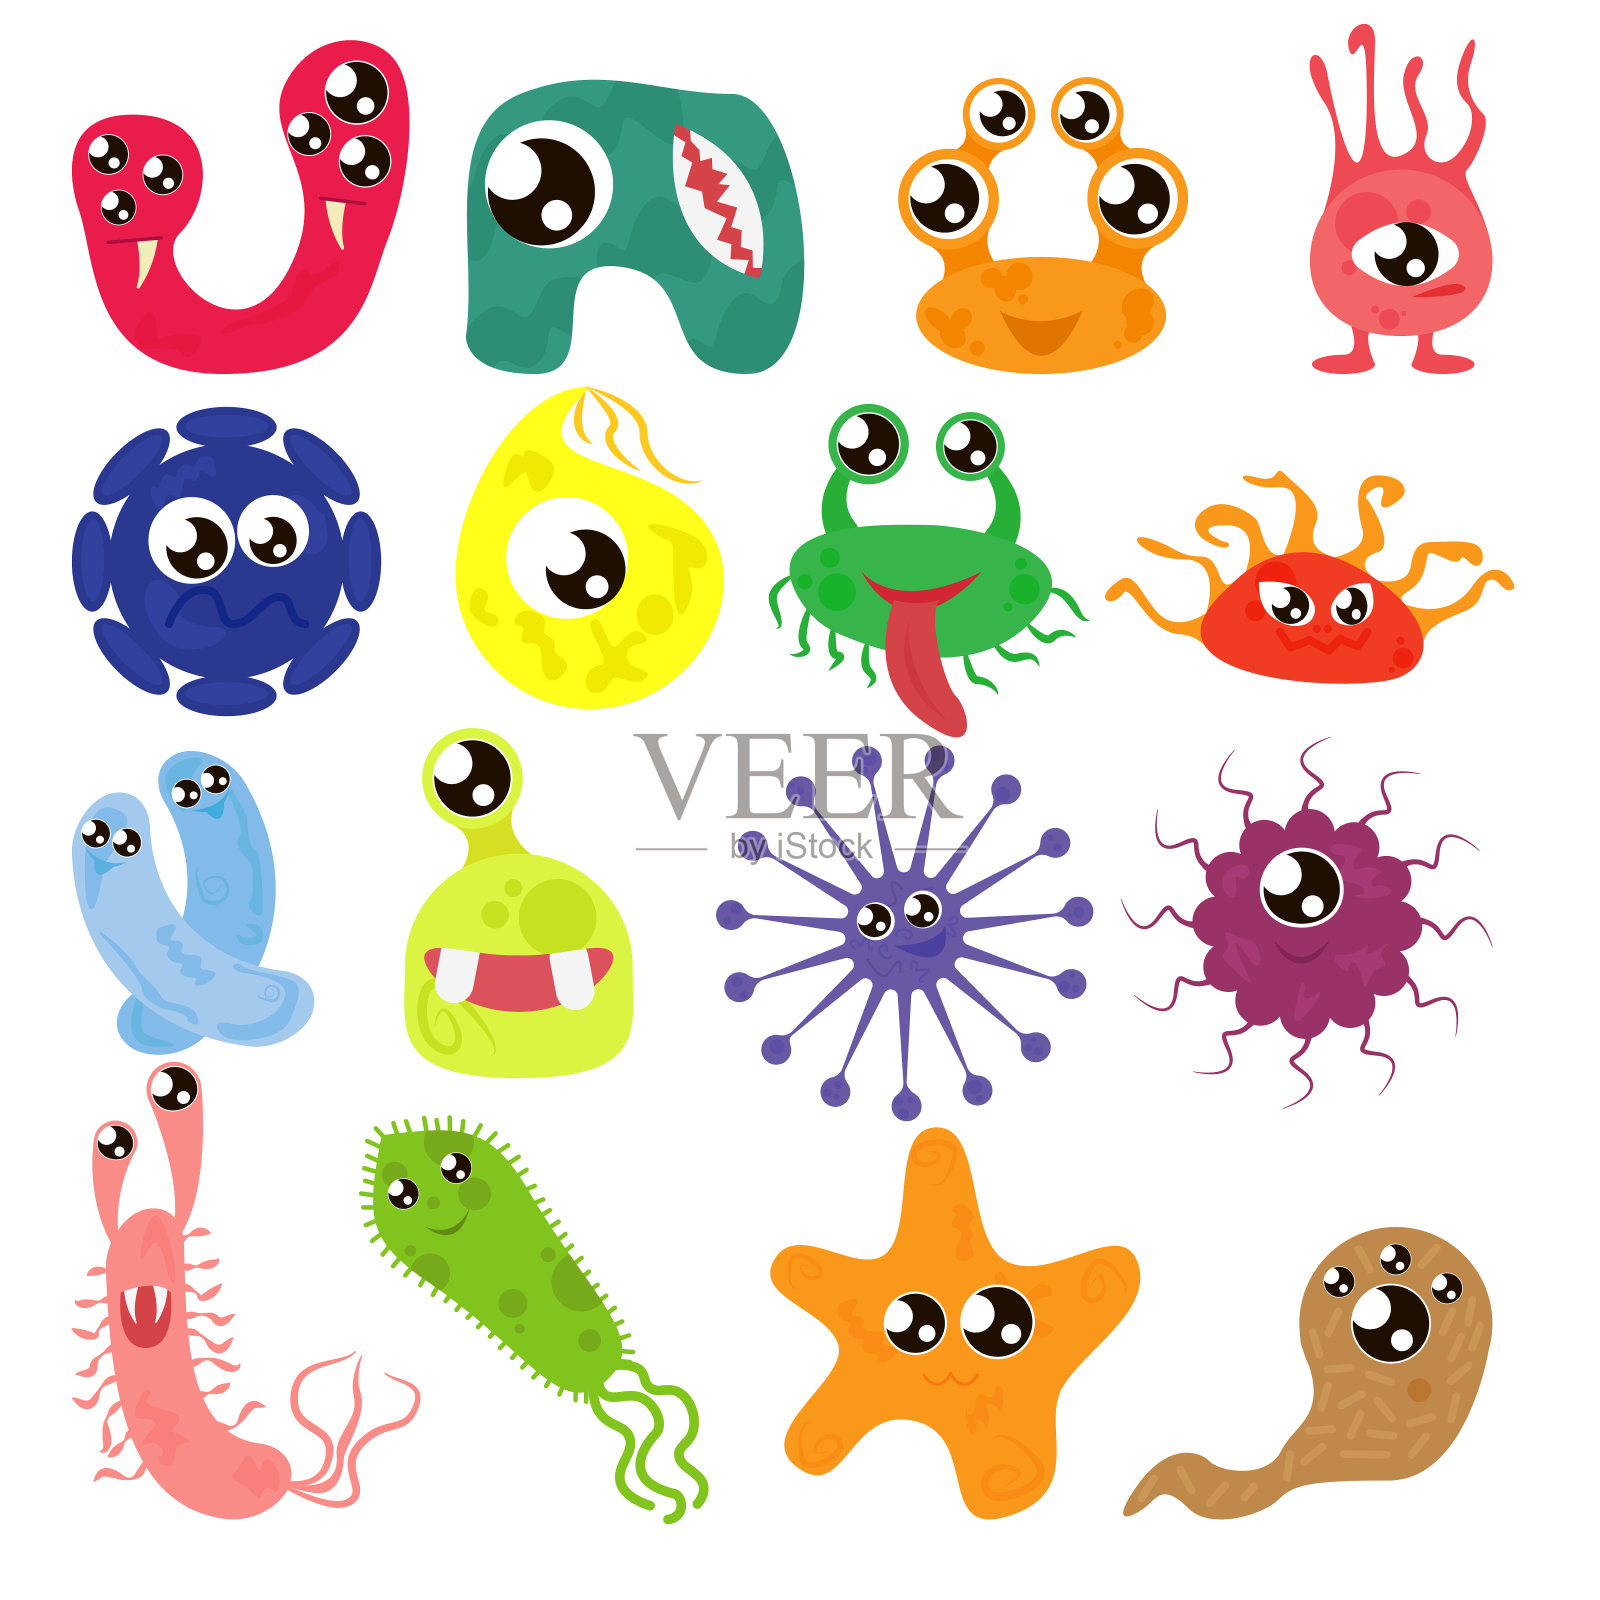 卡通细菌，有趣的人物，可爱的怪物与不同的形状，颜色和面部表情。有趣的病毒细胞和微生物卡通设计。矢量孤立在白色背景。插画图片素材